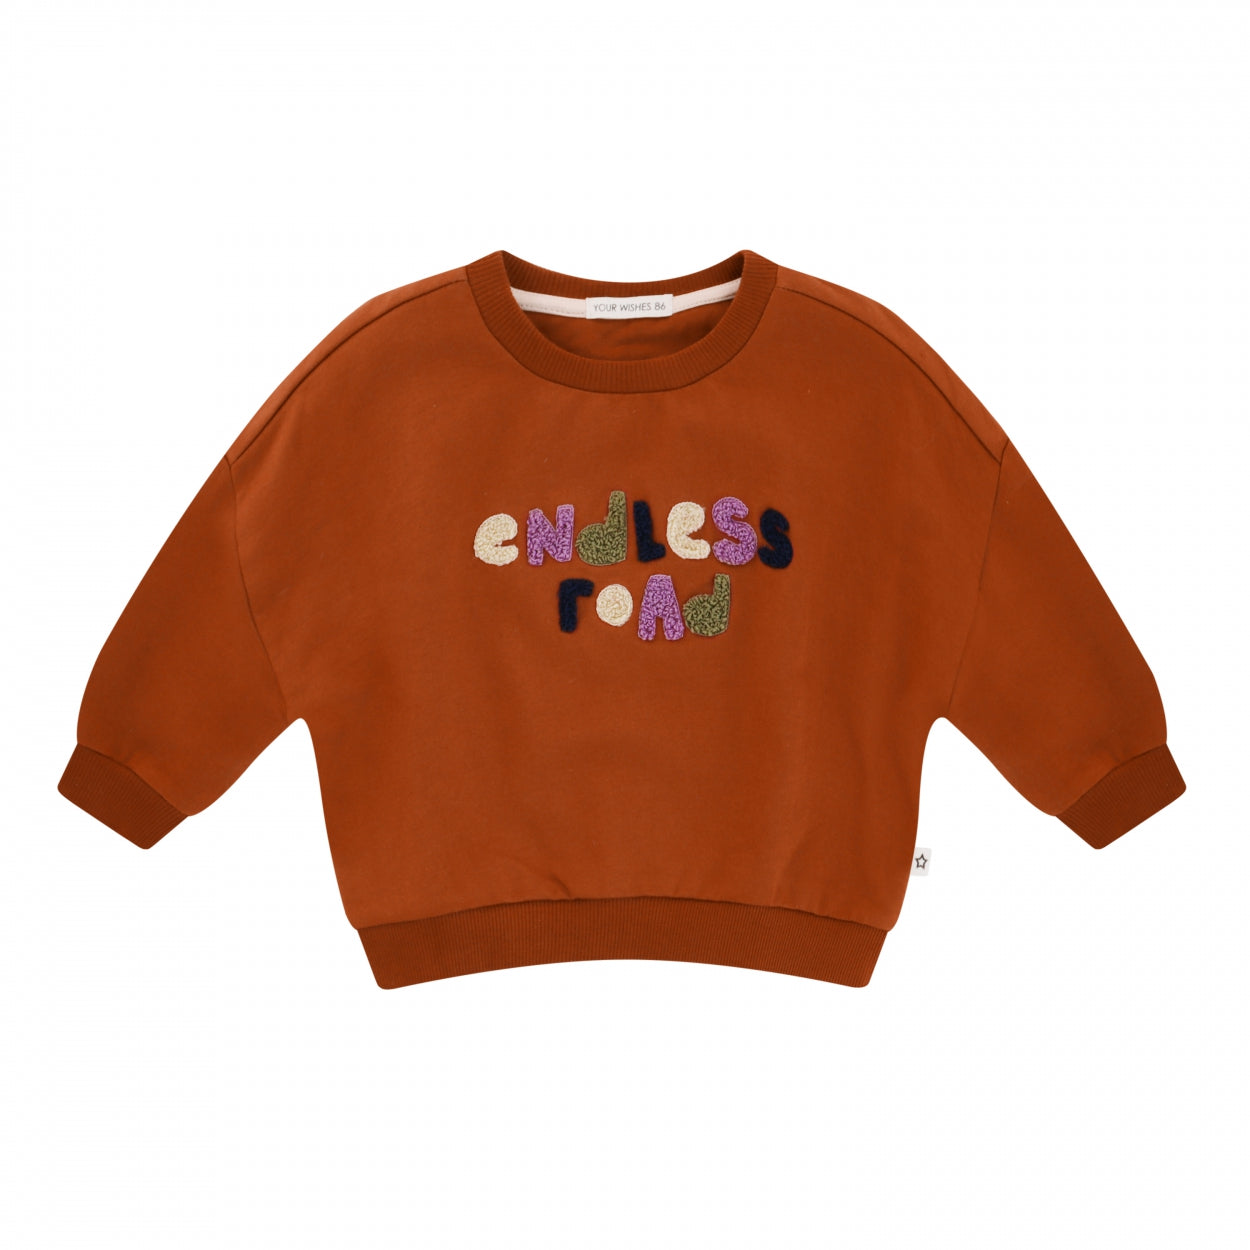 Meisjes Sweater Solid | Nio van Your Wishes in de kleur Ginger Biscuit in maat 92.